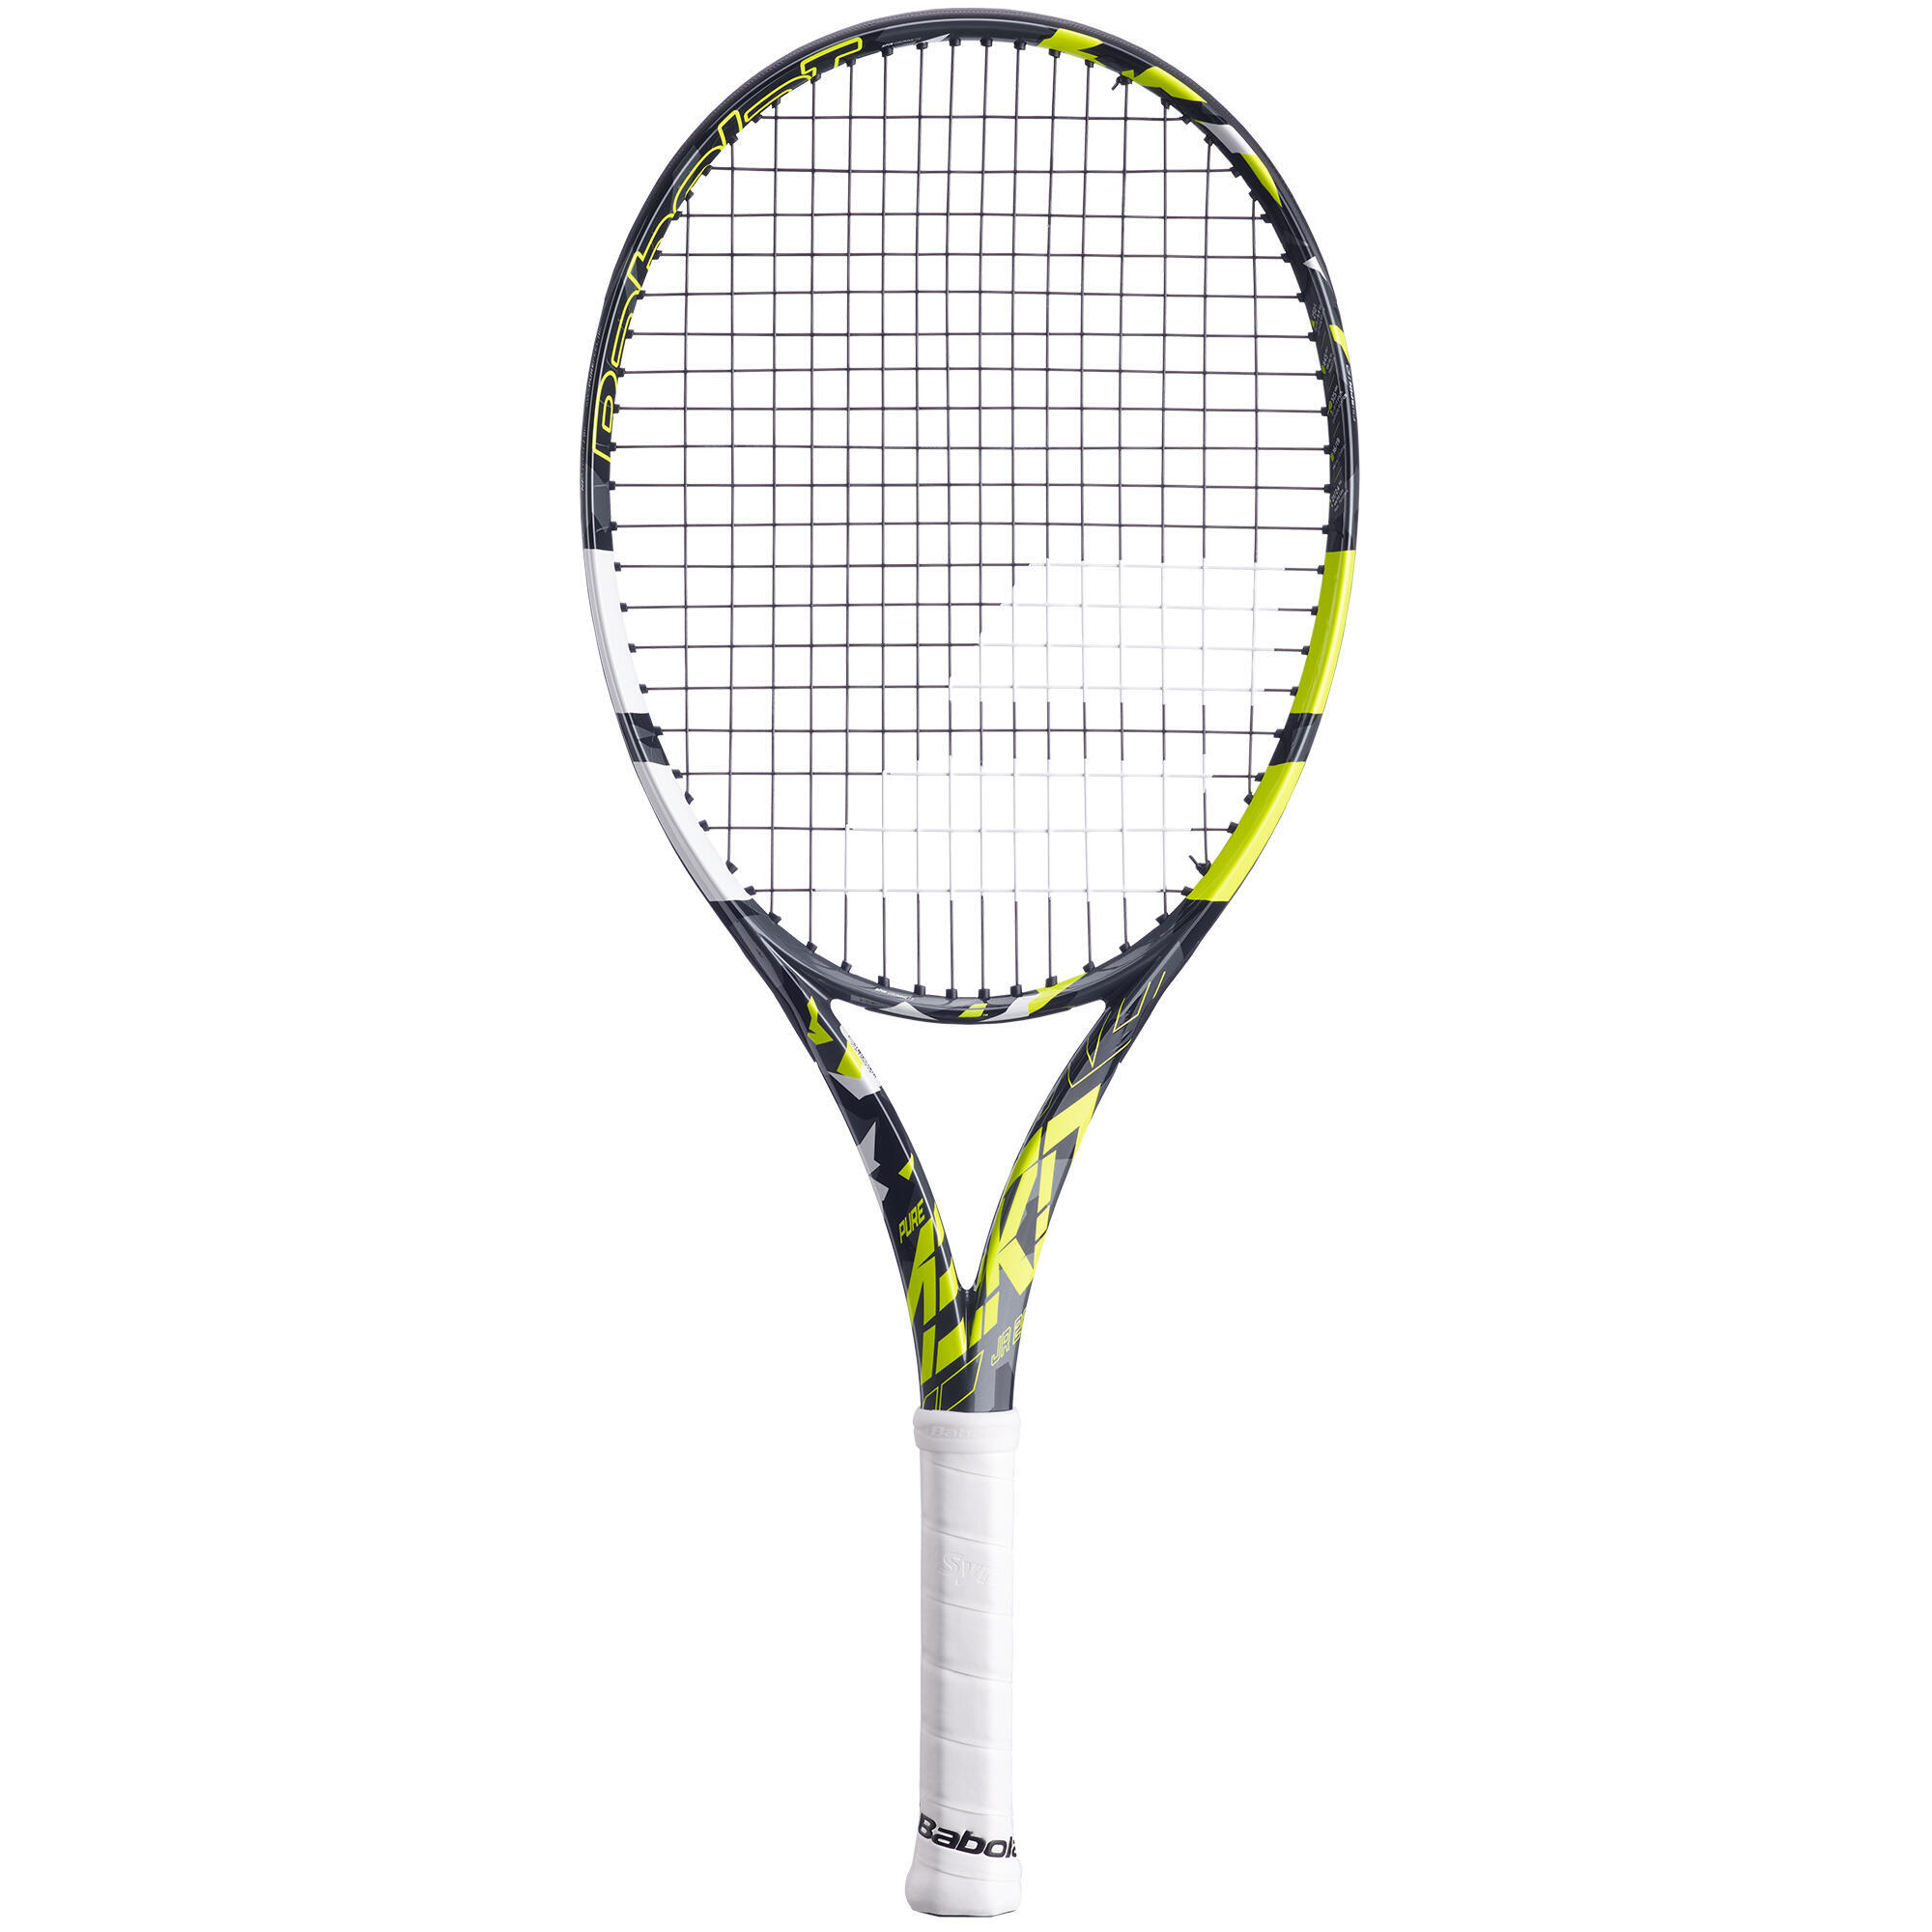 Детская теннисная ракетка Pure Aero 26 дюймов, черная/желтая BABOLAT ракетка для большого тенниса babolat pure aero lite желтый